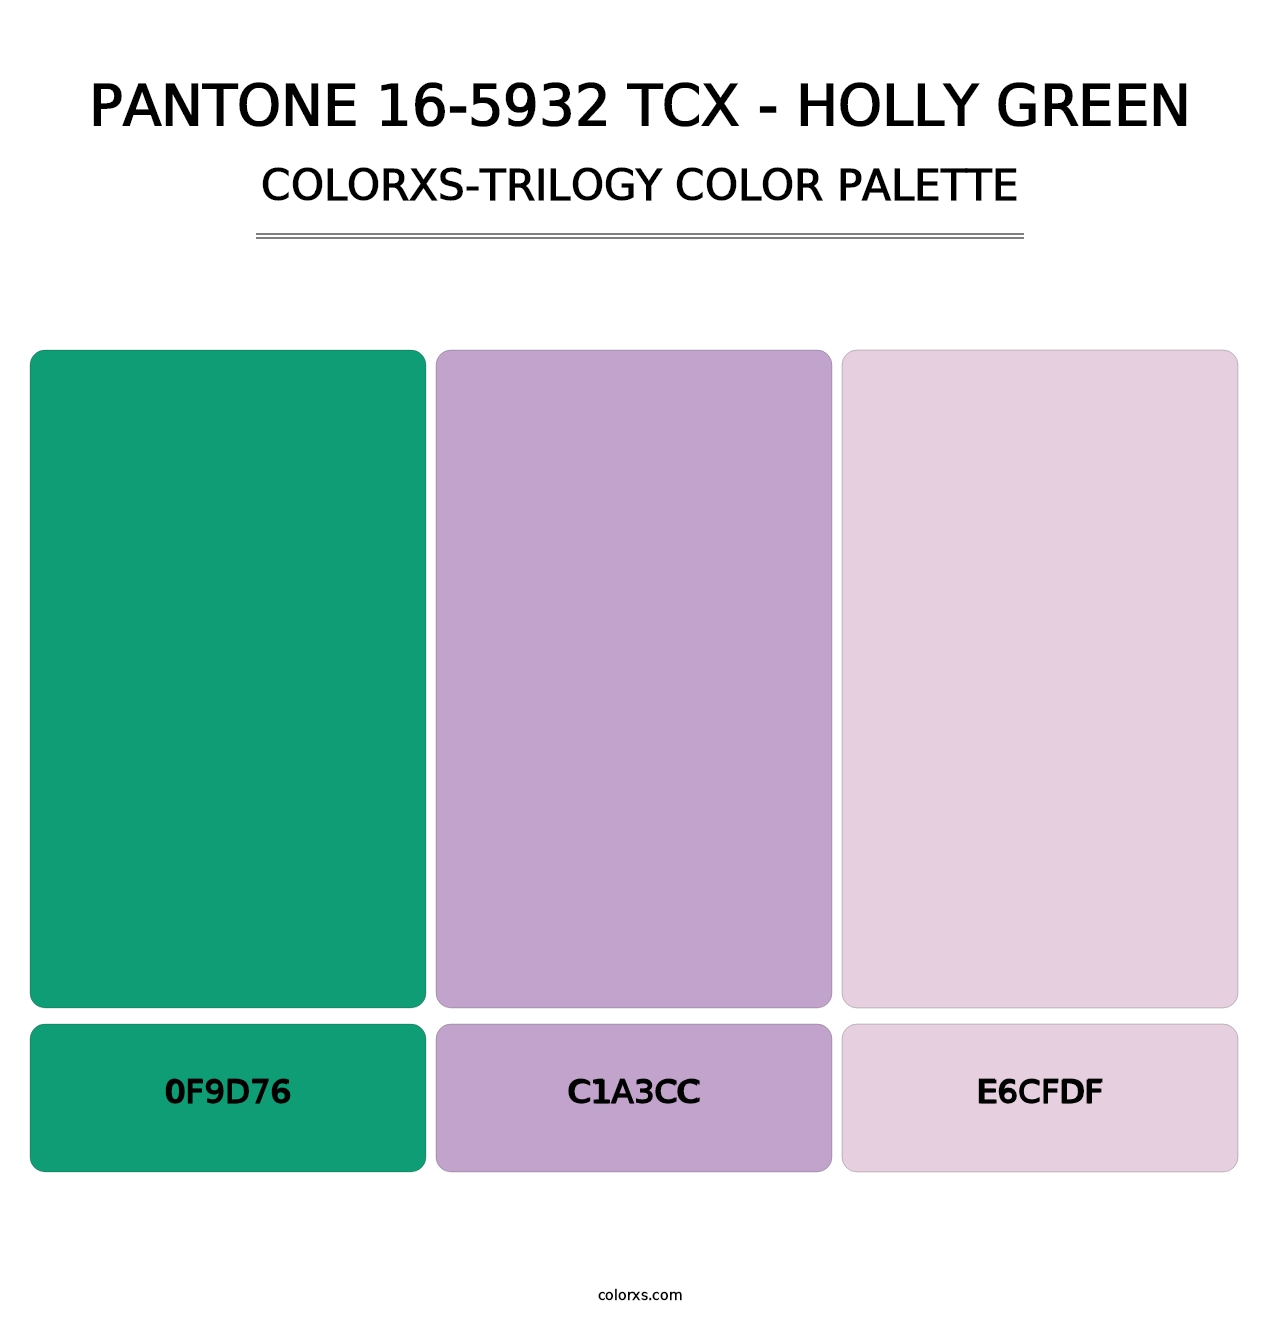 PANTONE 16-5932 TCX - Holly Green - Colorxs Trilogy Palette